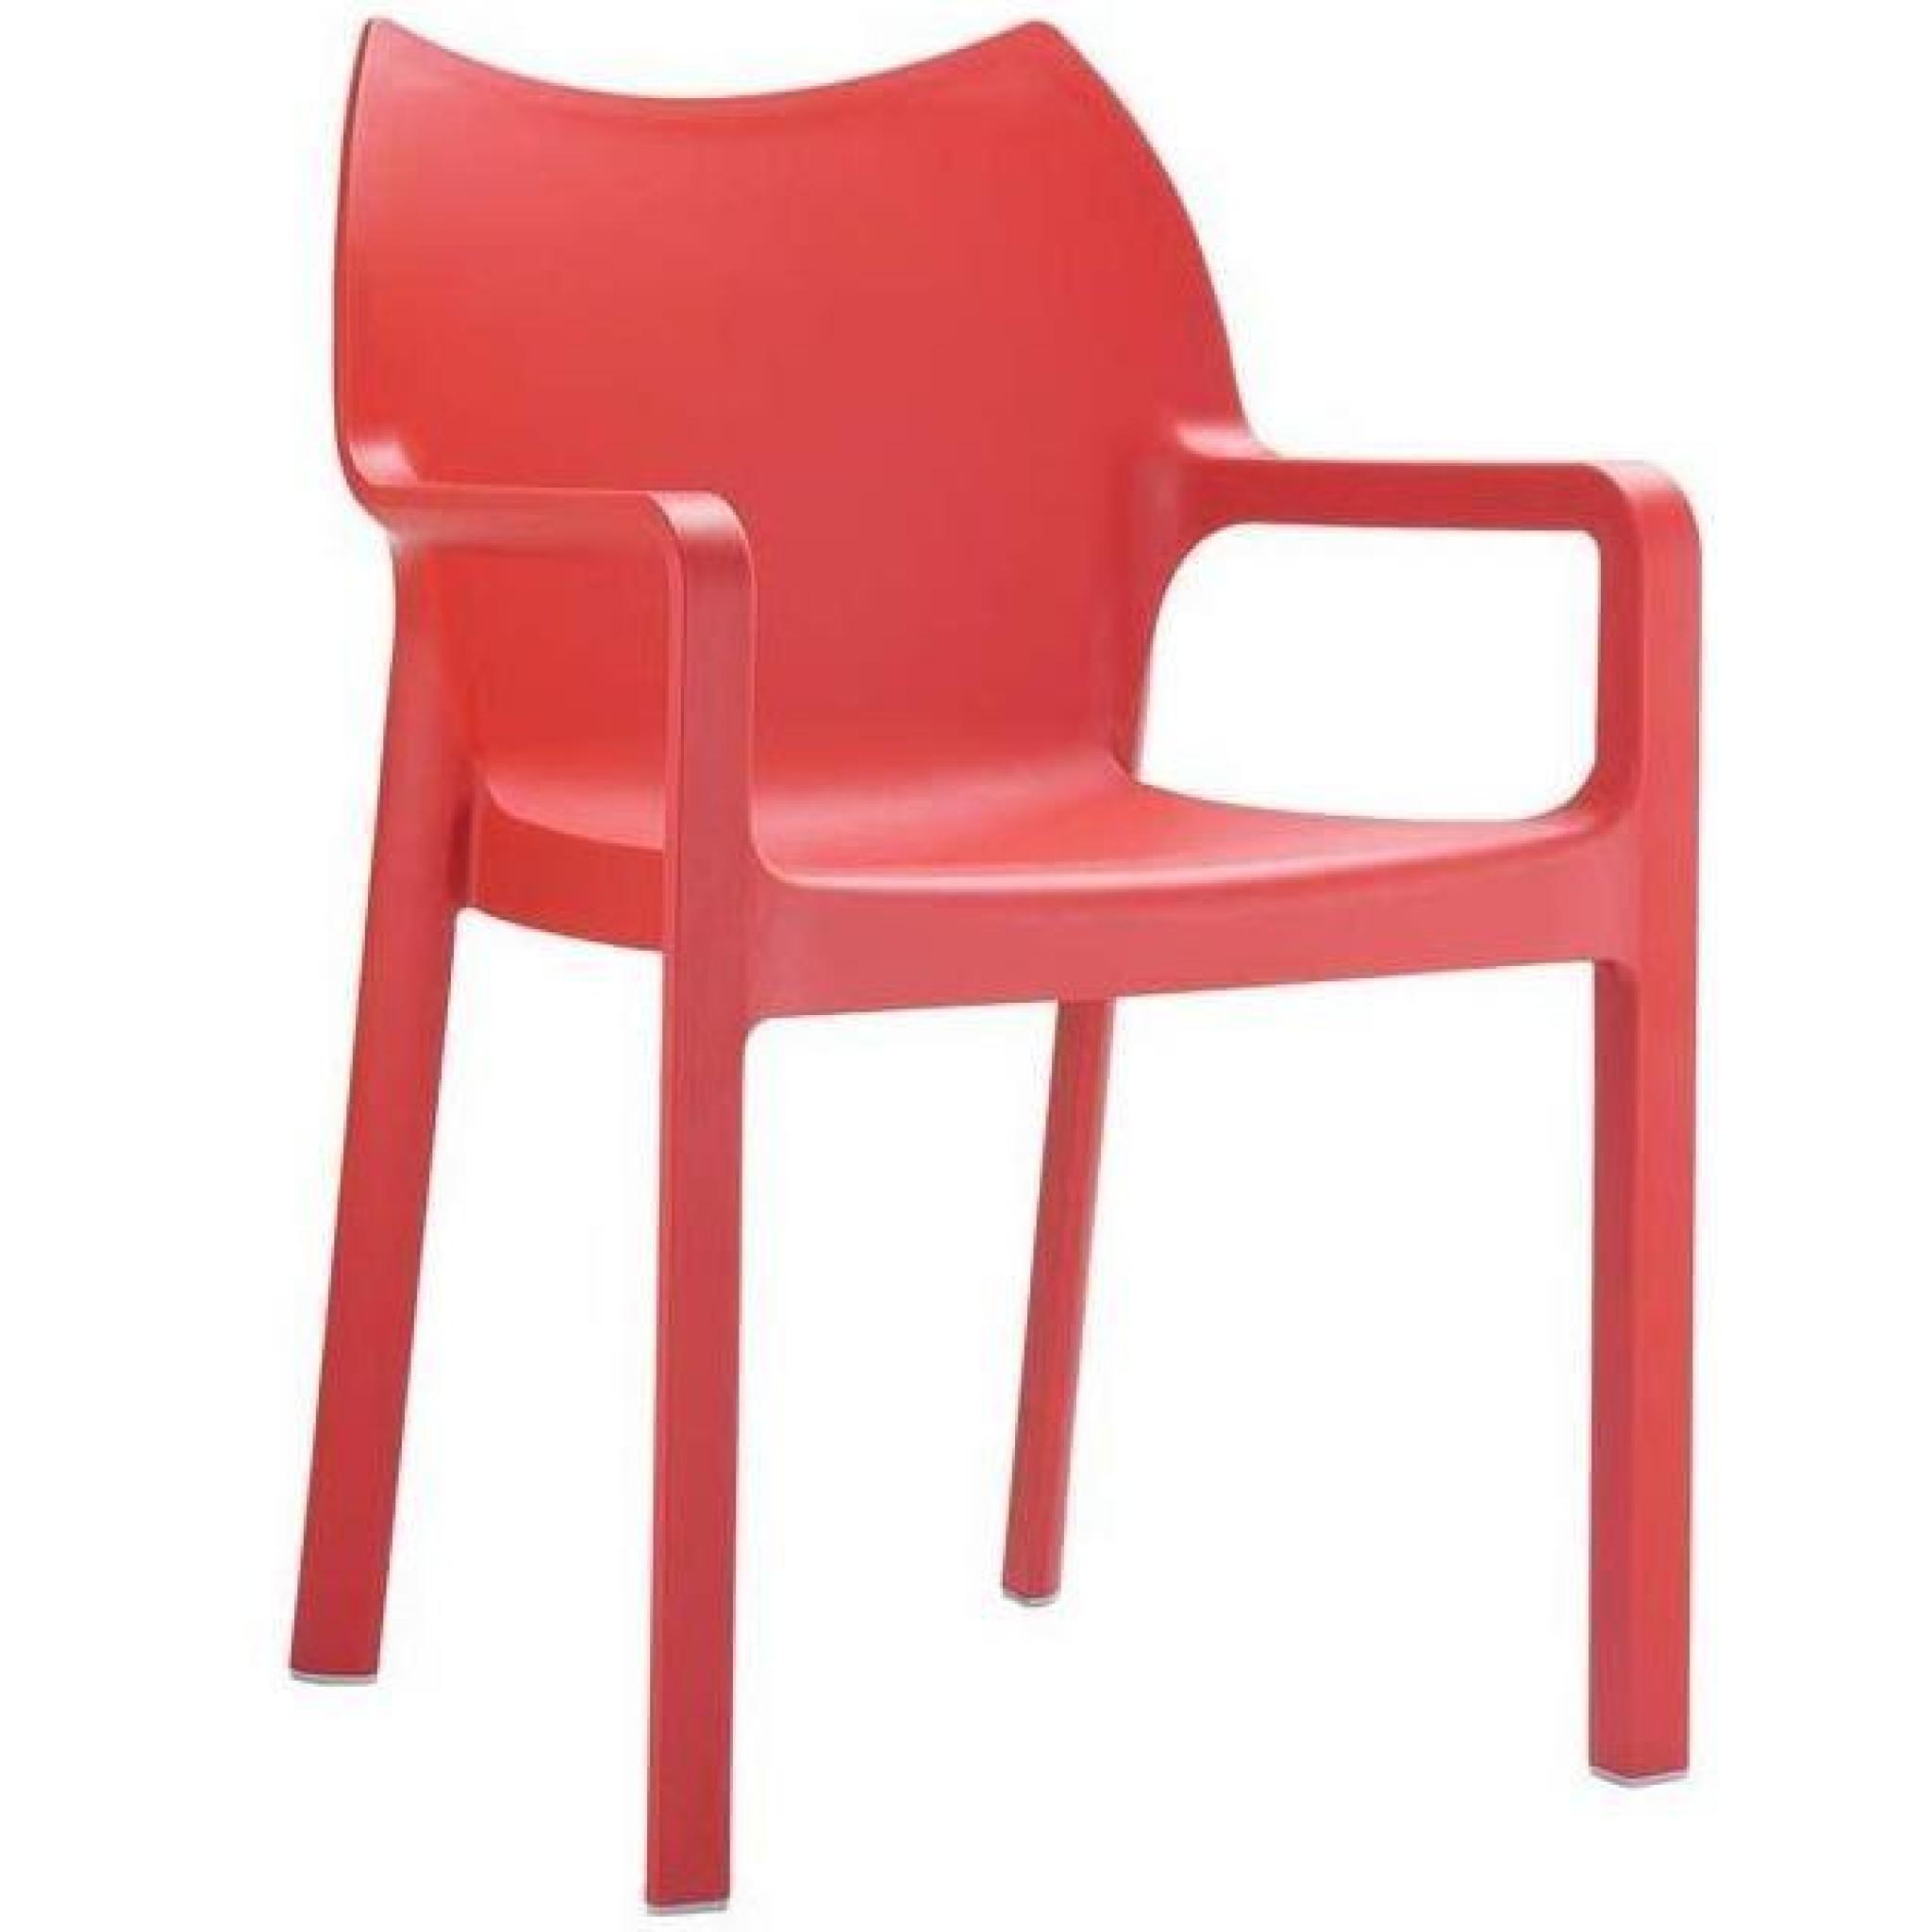 Chaise de jardin empilable en plastique, rouge